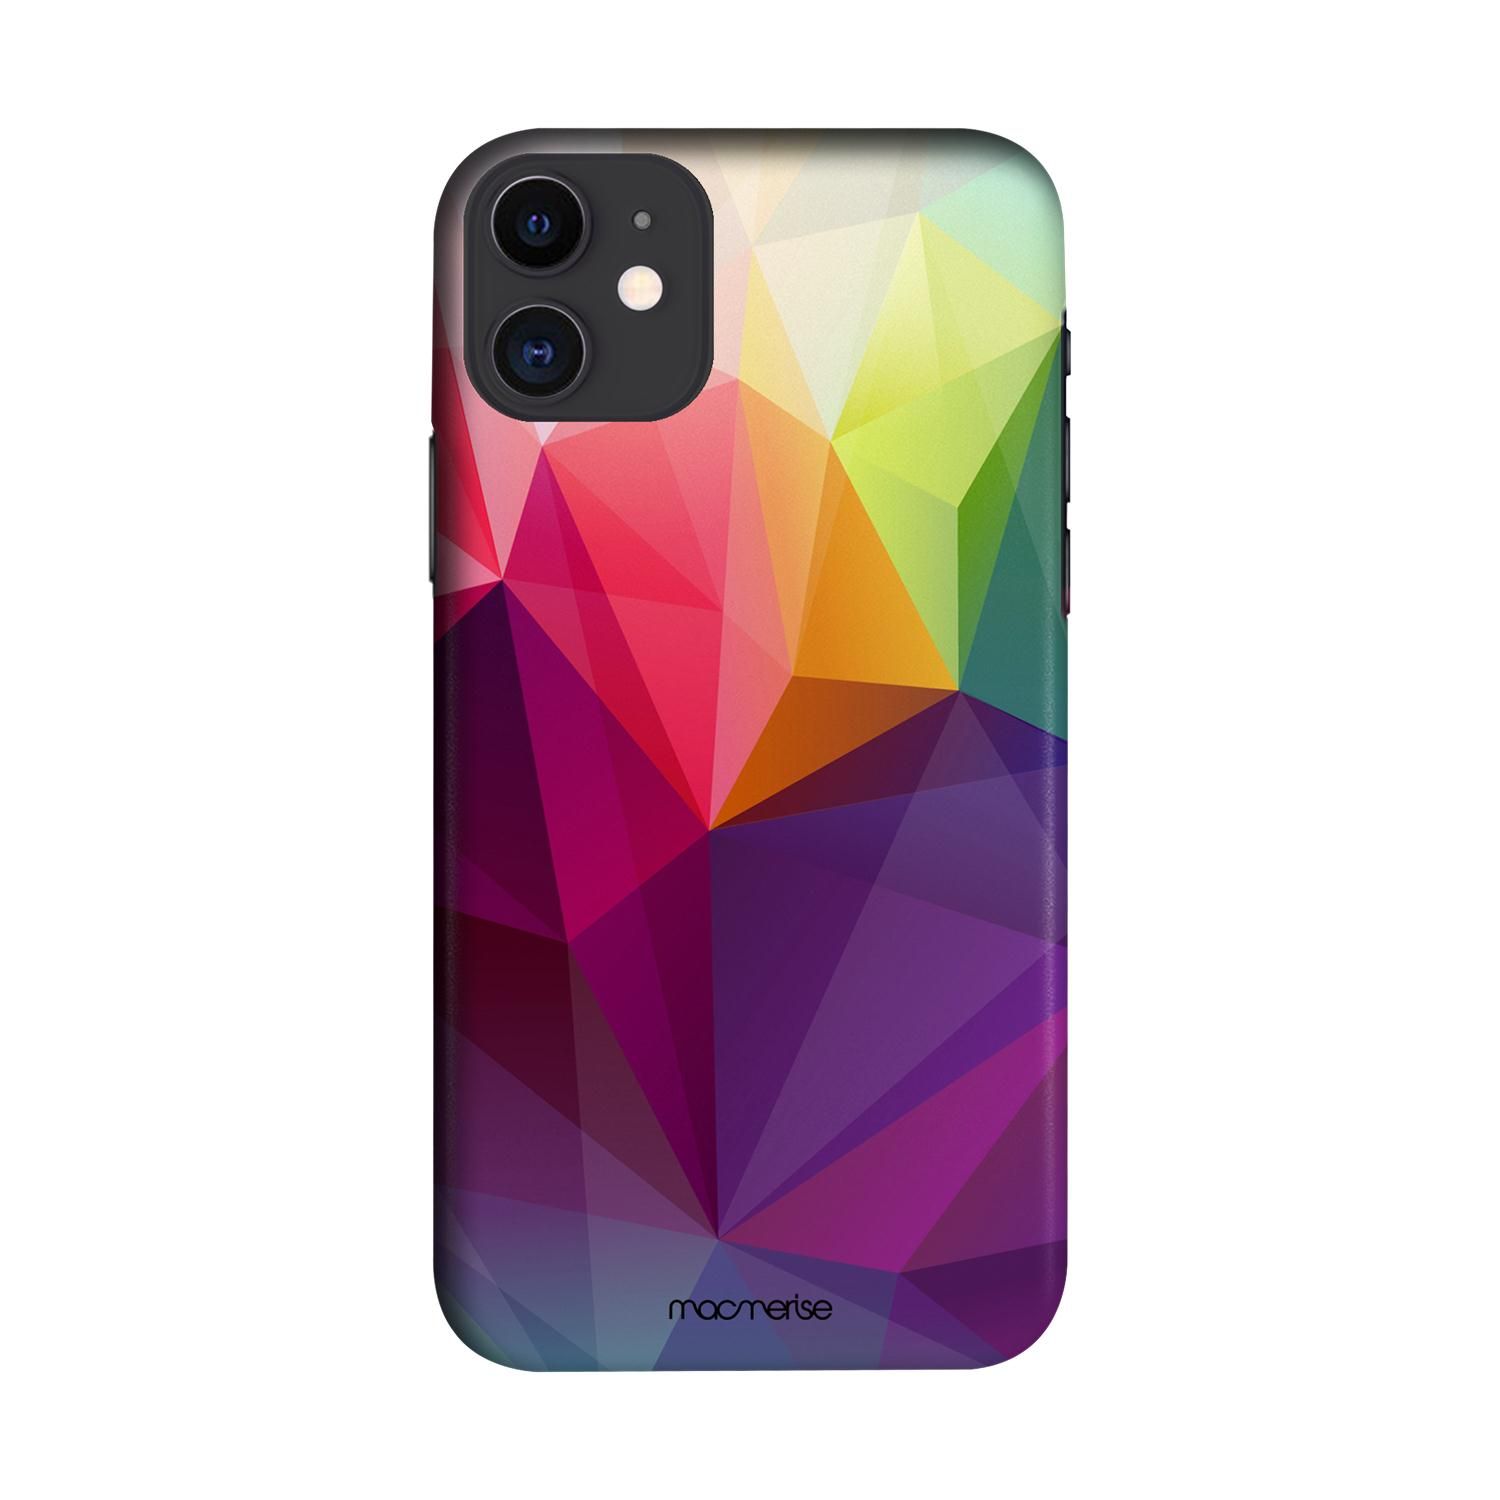 Buy Crystal Art - Sleek Phone Case for iPhone 11 Online